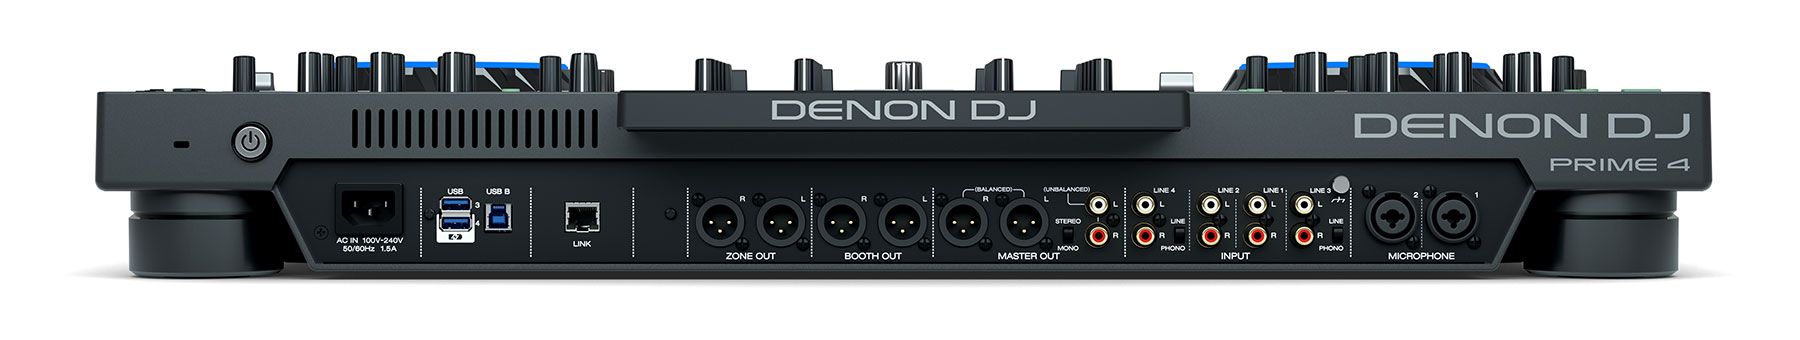 Denon DJ Prime 4-Img-168627